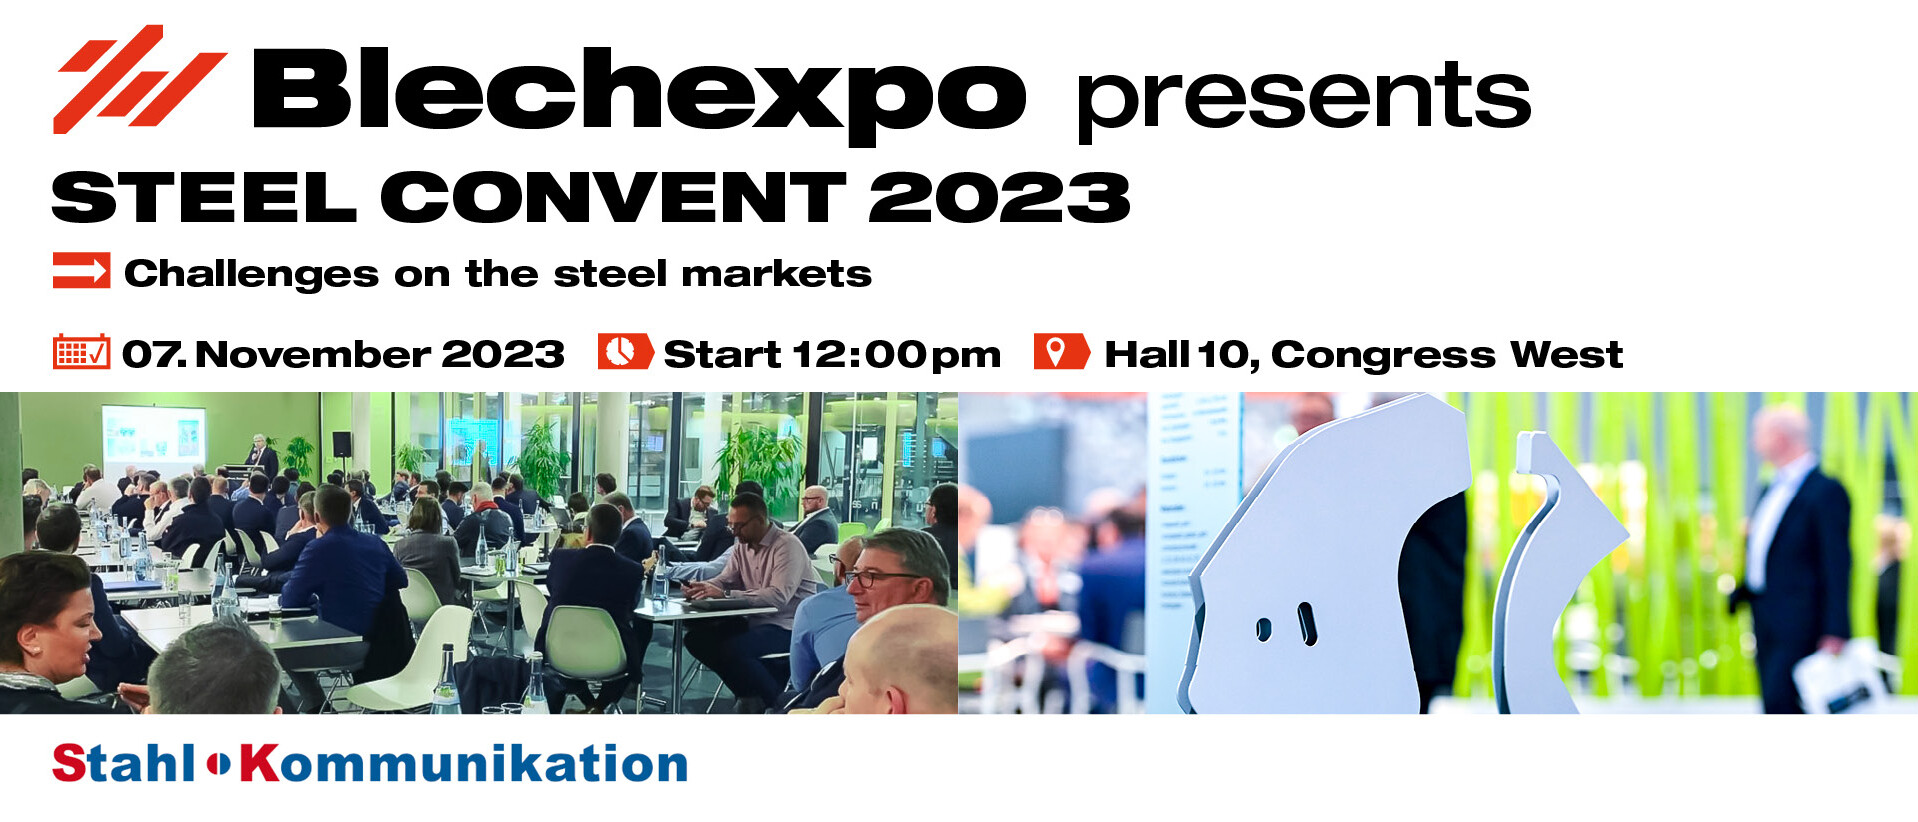 Blechexpo Internationale Fachmesse für Blechbearbeitung Blechexpo Stahlkonvent 2023 1920x822 website 01 en web uai